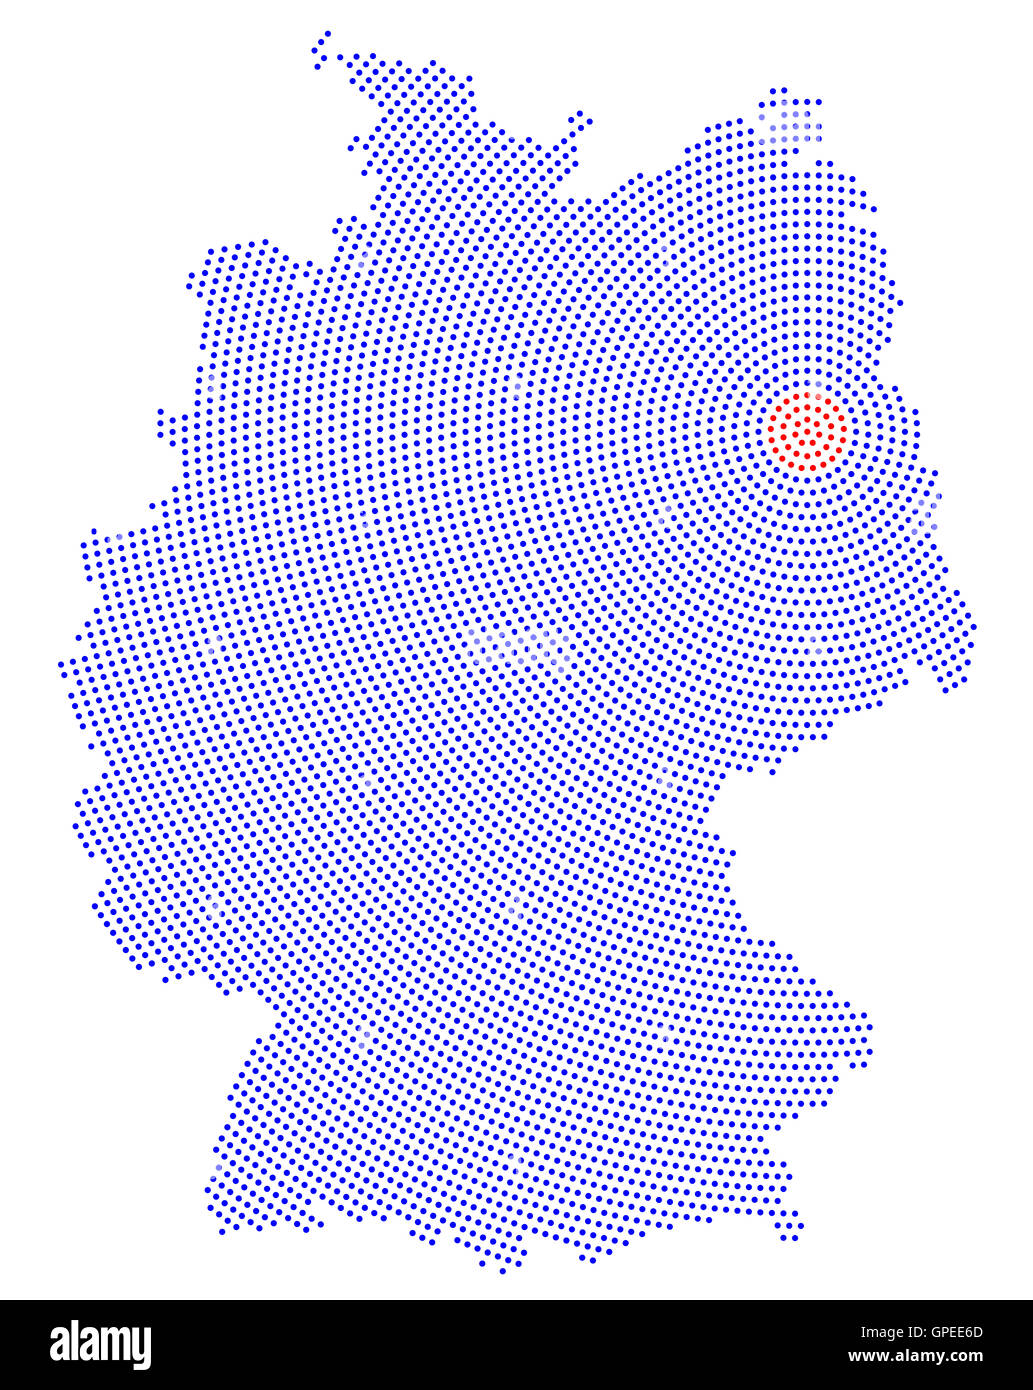 Deutschland Karte radial Punktmuster. Blaue Punkte gehen von den roten gepunkteten Hauptstadt Berlin nach außen und bilden die Land-Silhouette. Stockfoto